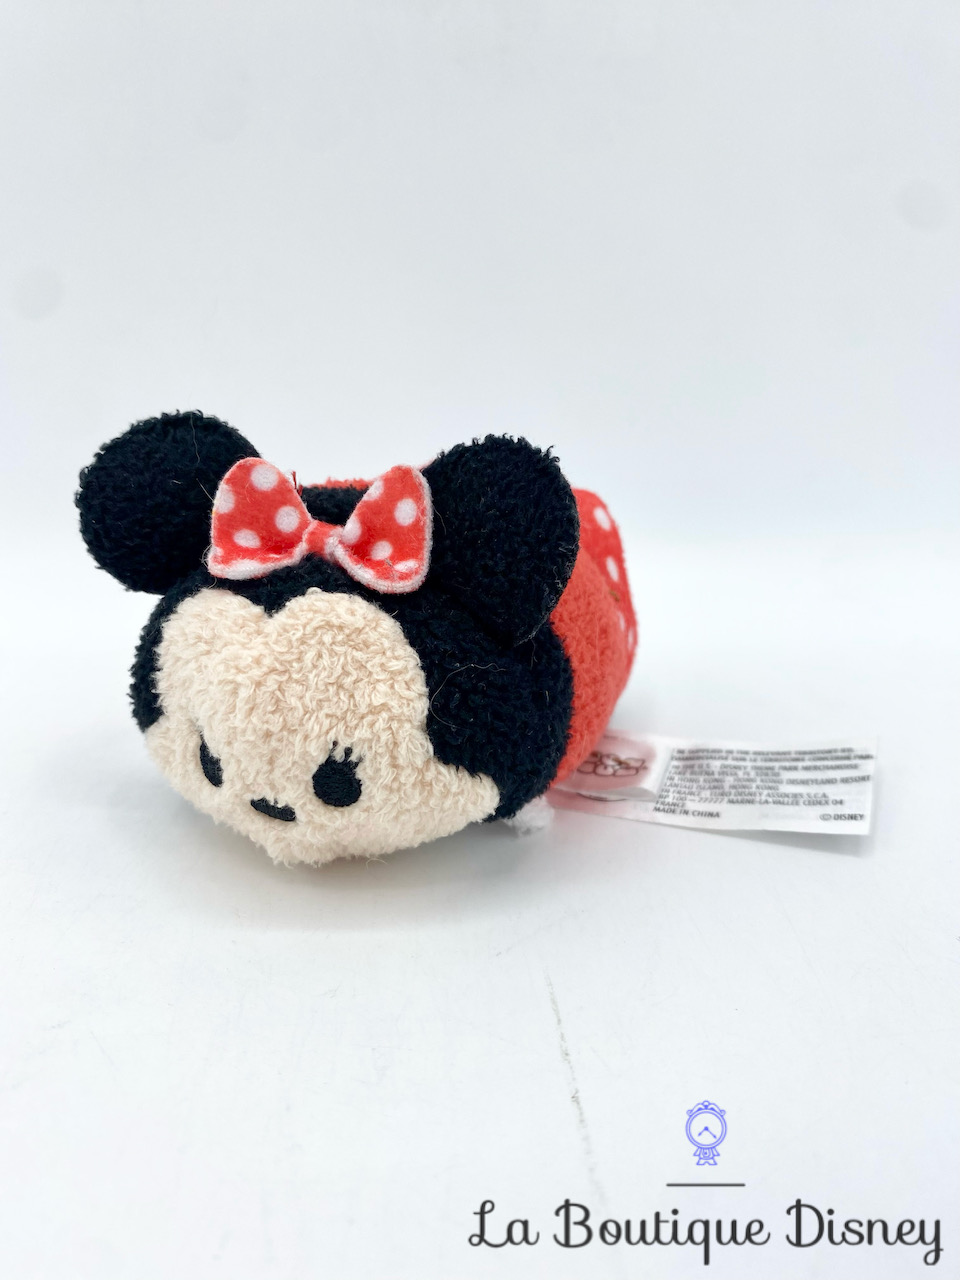 Peluche Tsum Tsum Minnie Mouse Disney Parks Disneyland classique noir rouge